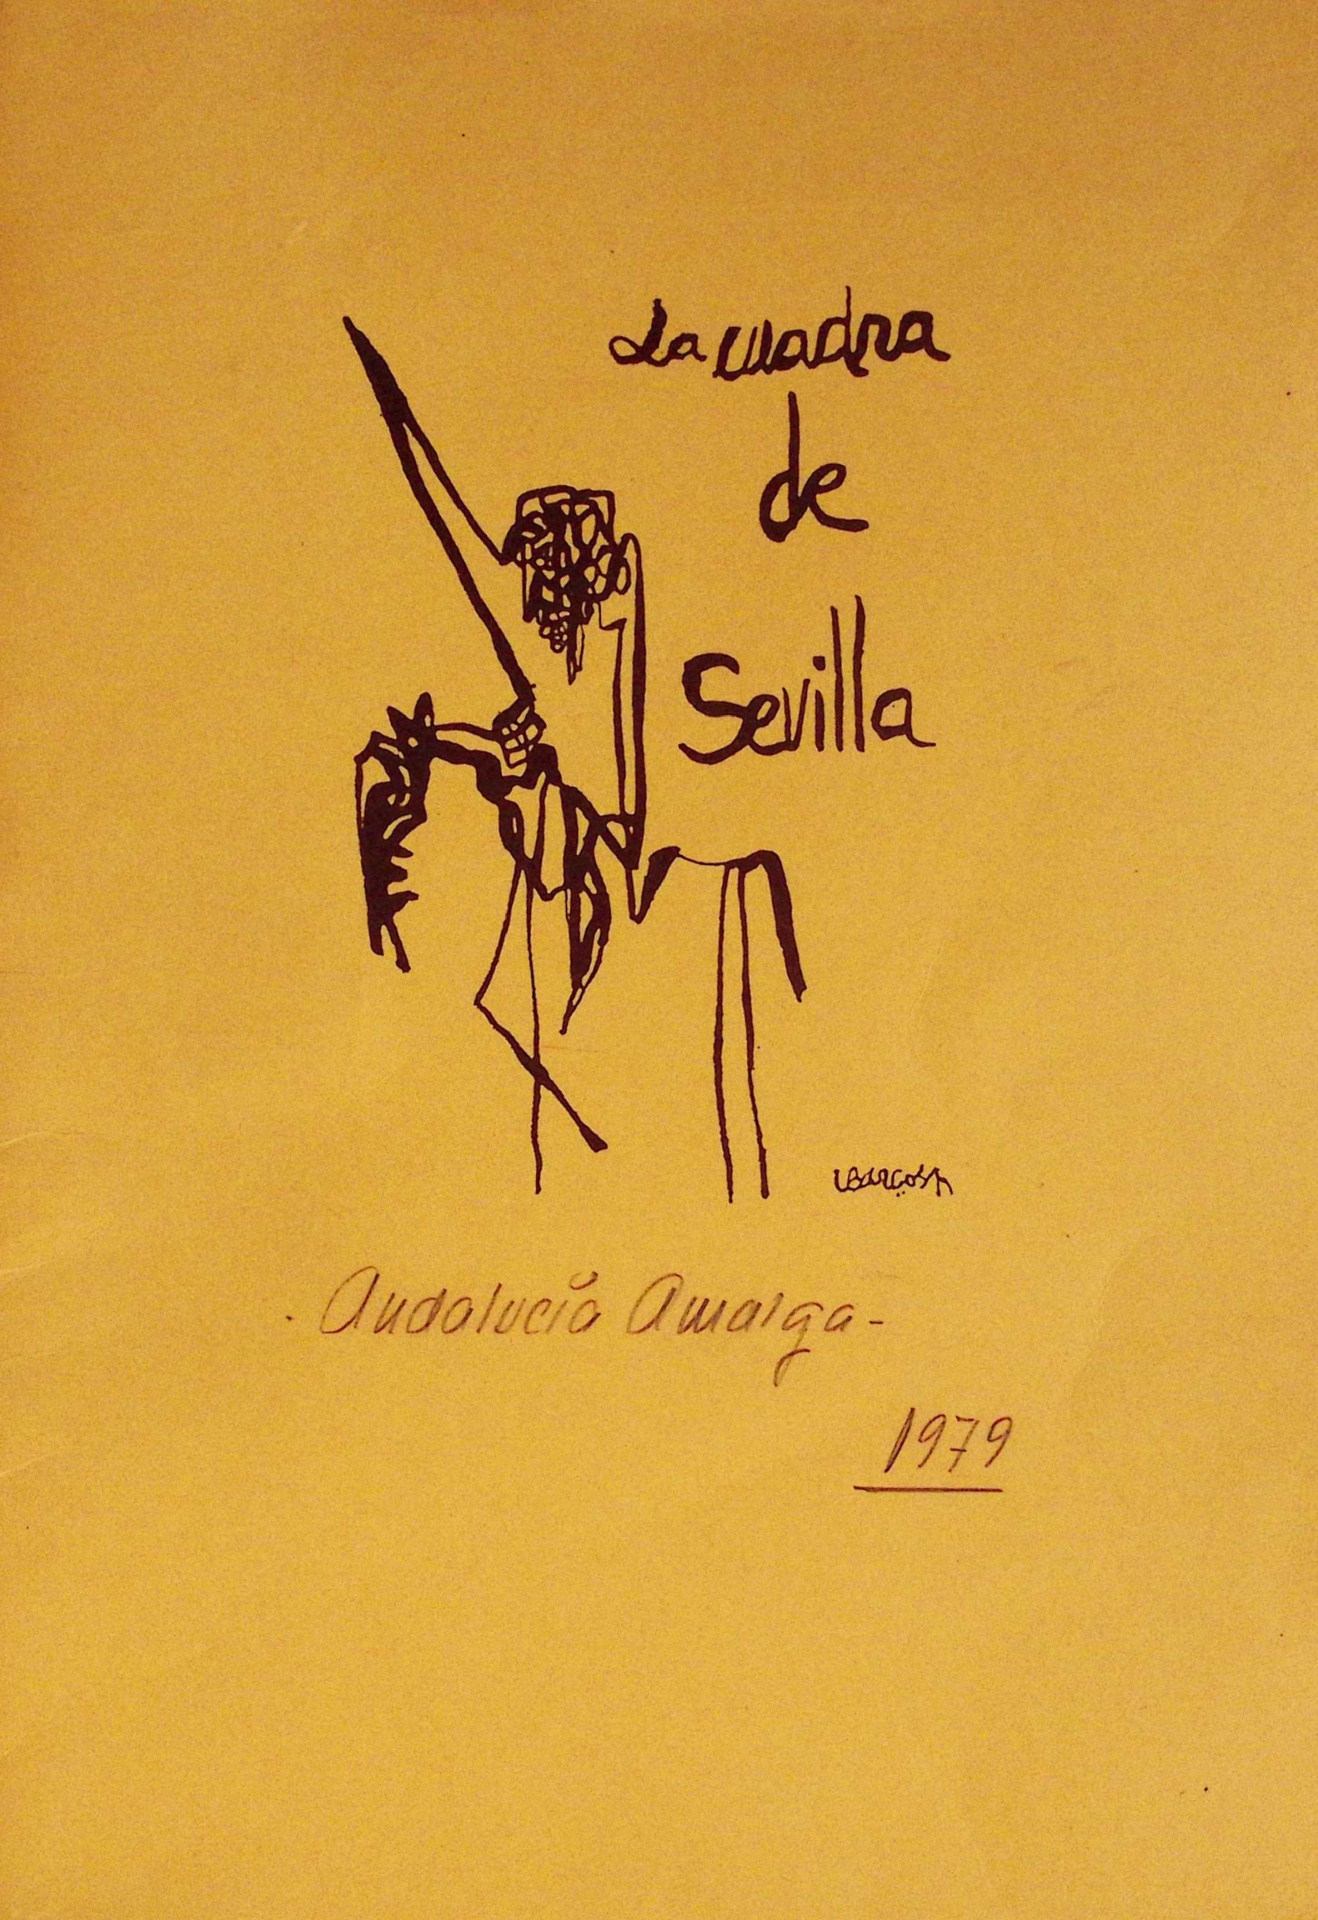  Andalucía Amarga 1979. La Cuadra de Sevilla [Sumario]